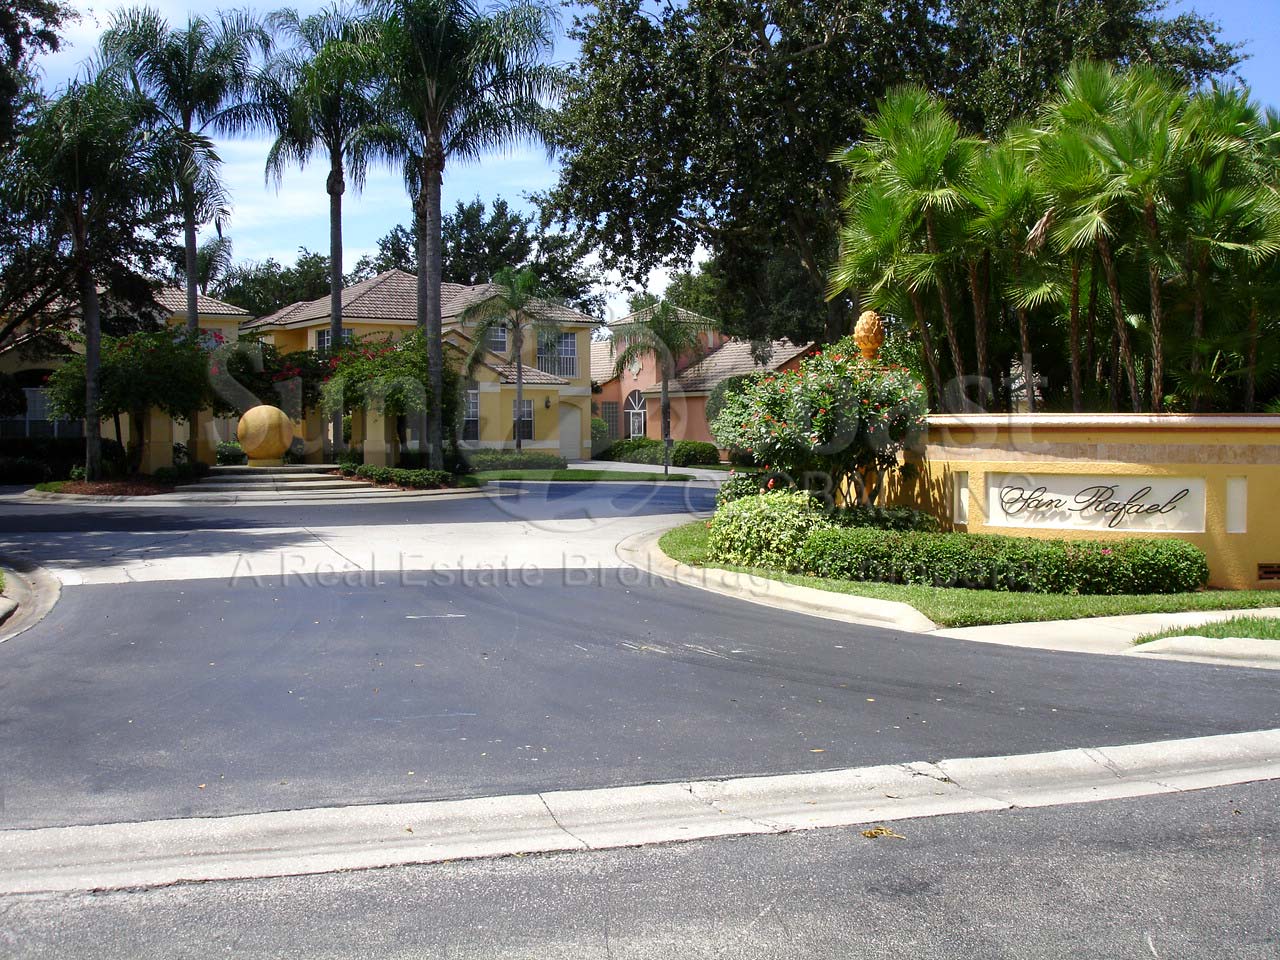 San Rafael entrance